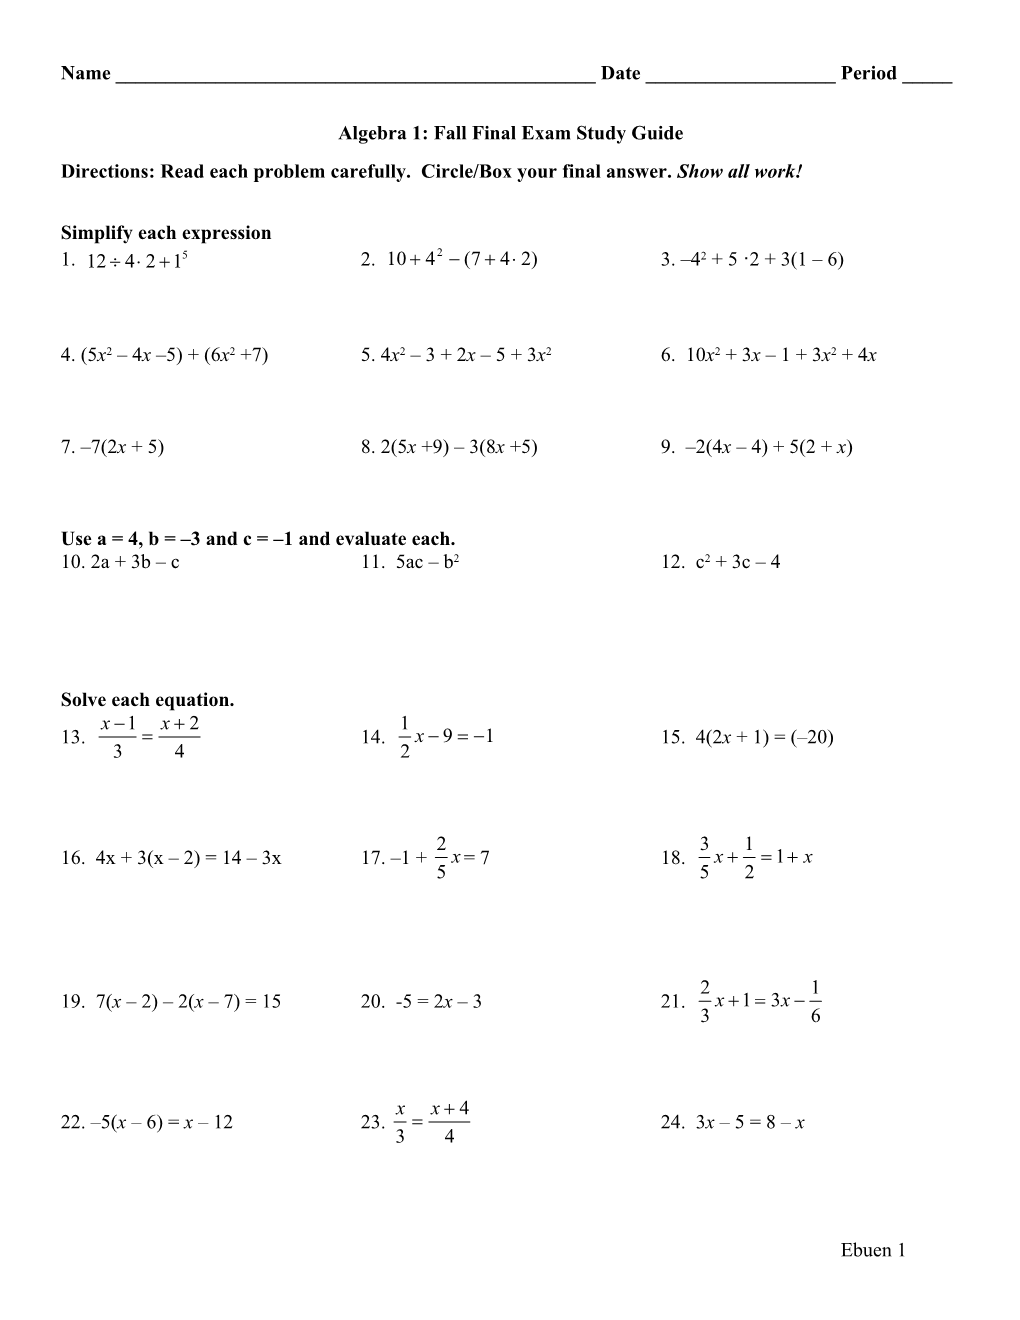 Algebra 1: Fall Final Exam Study Guide